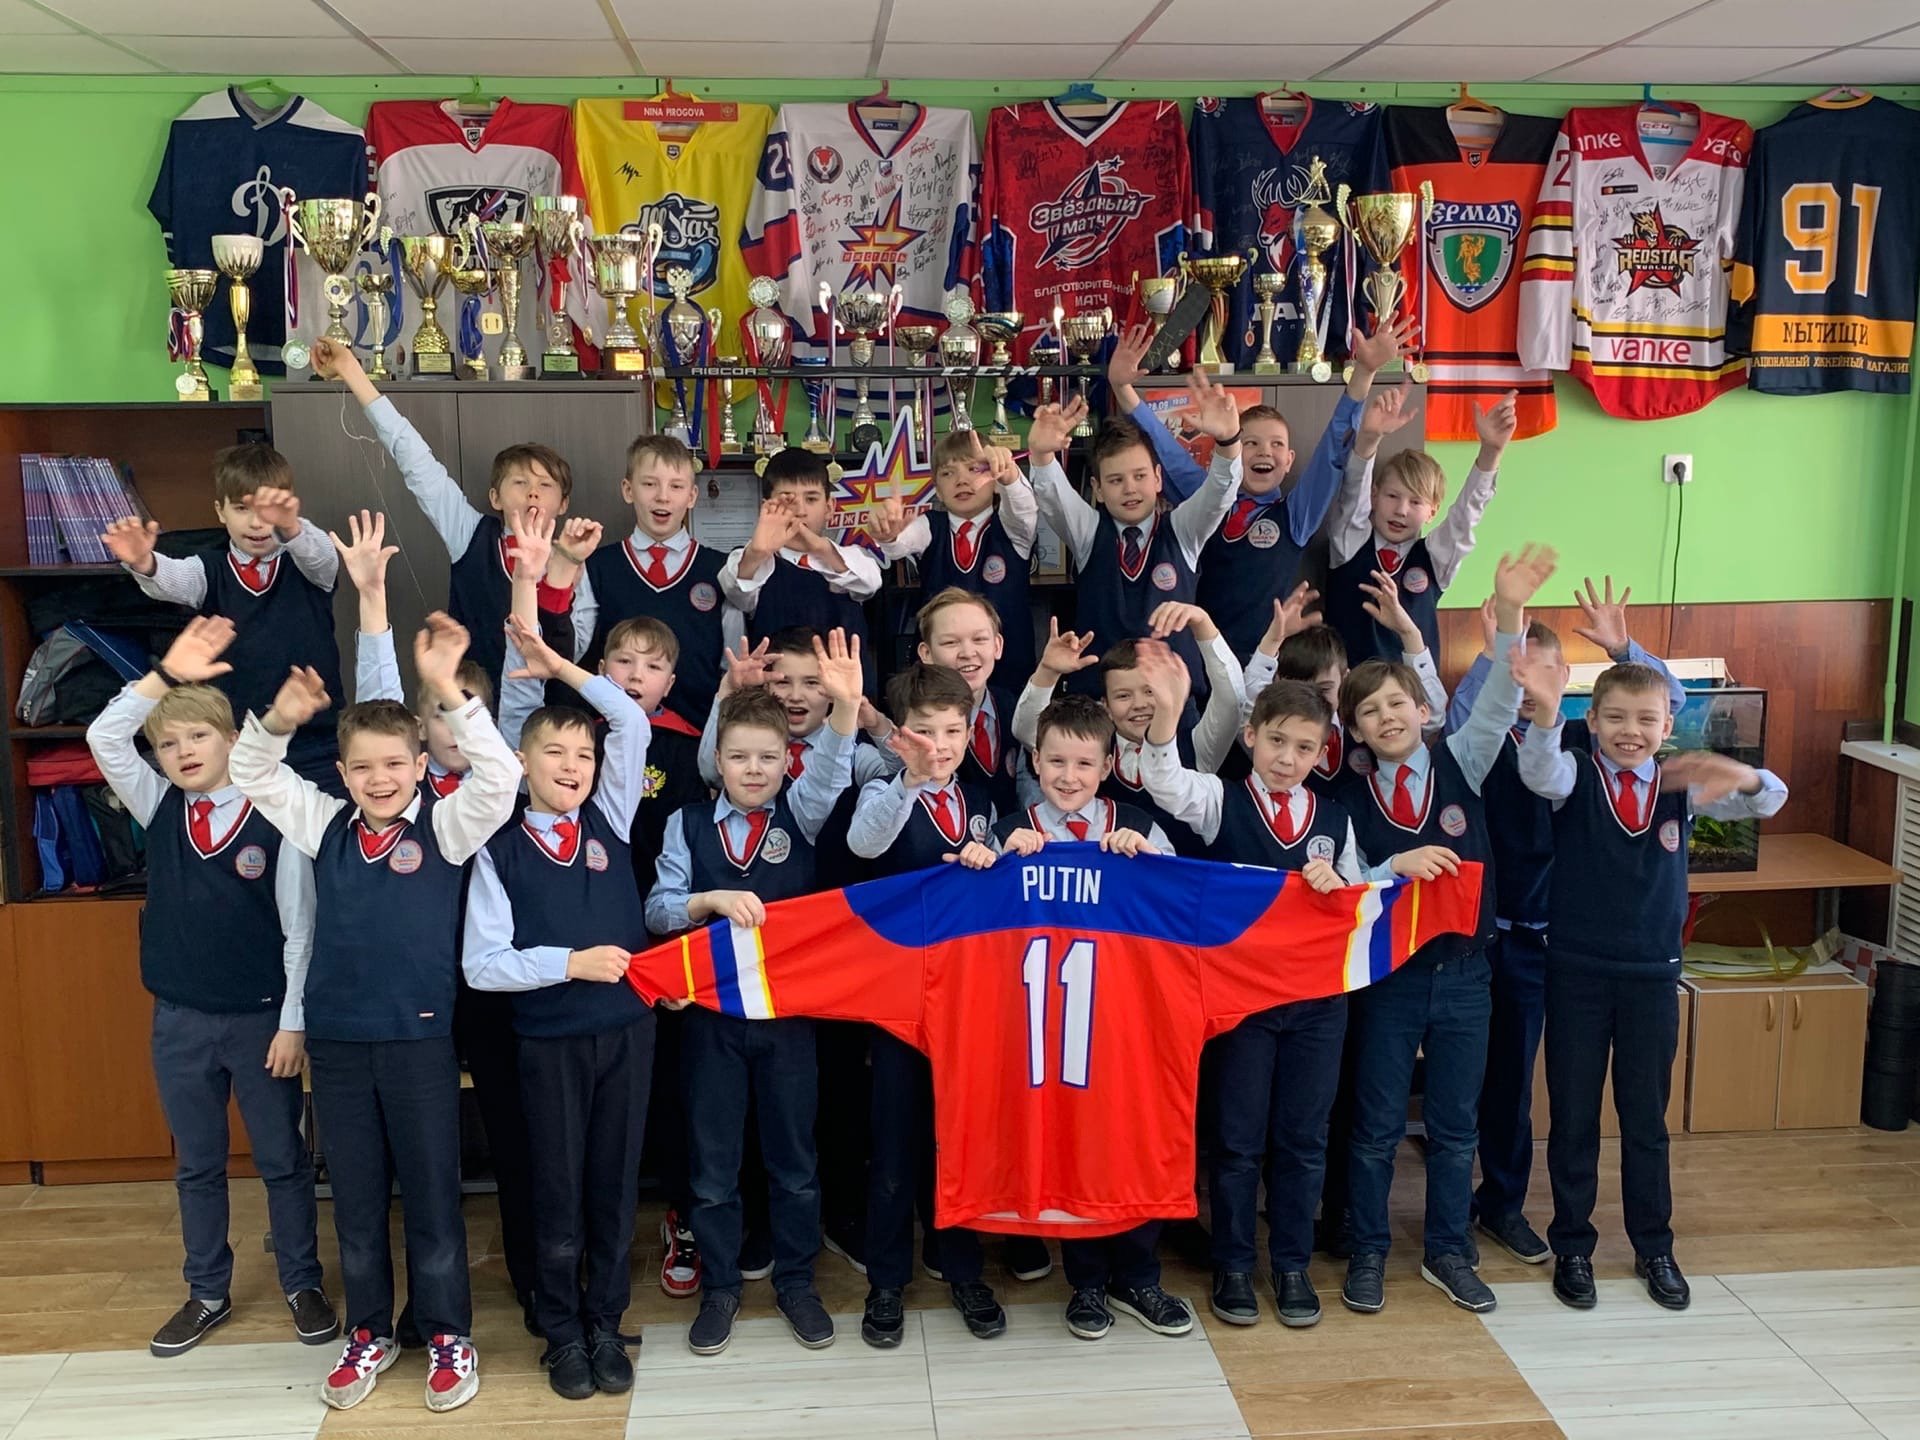 

Хоккейный свитер Владимира Путина появился в коллекции школьного музея в Ижевске

